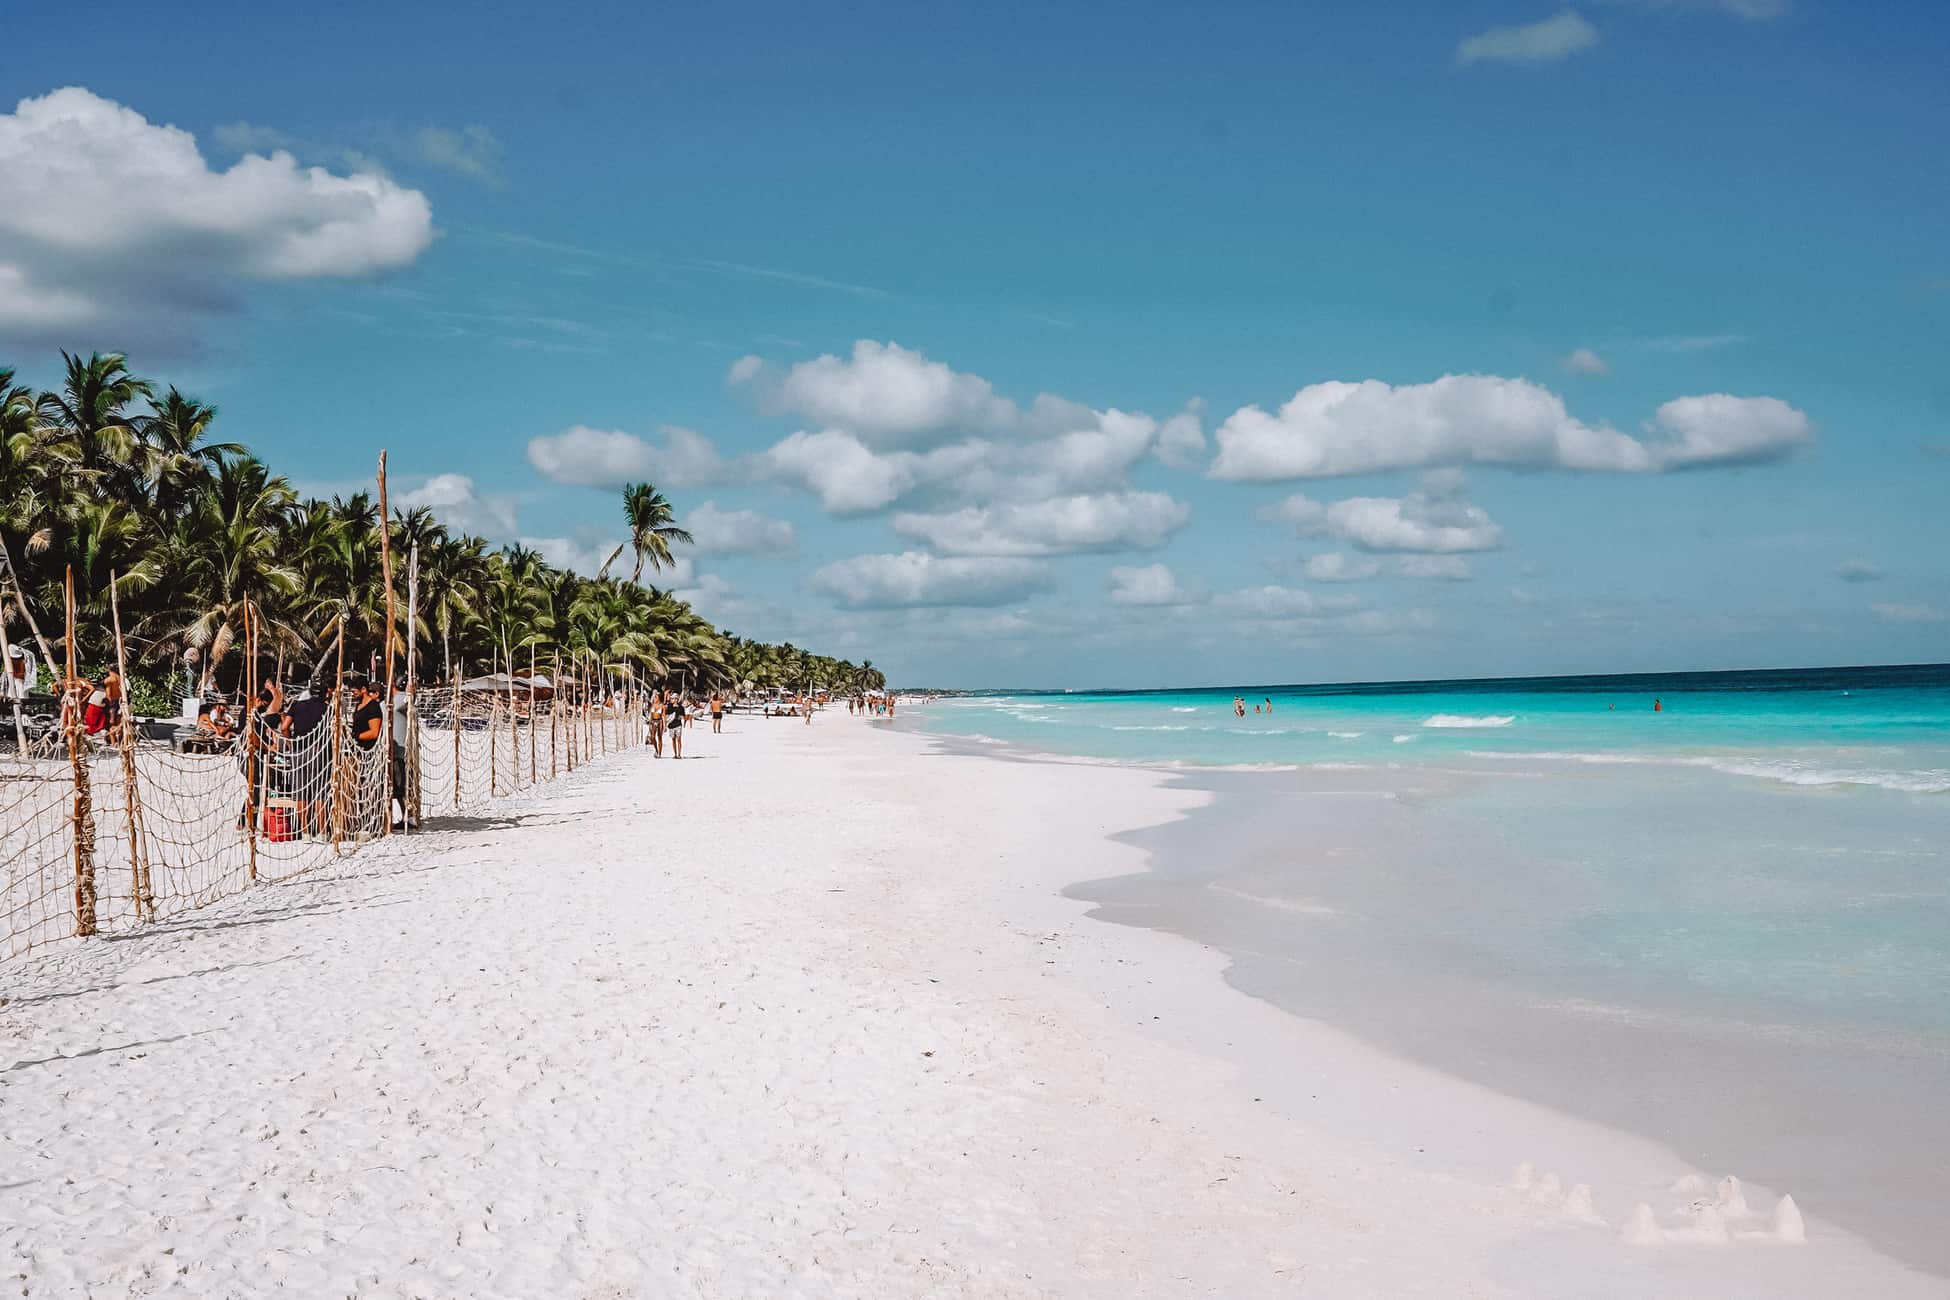 Playa del Carmen vs Tulum comparison - the best beach destination in Mexico